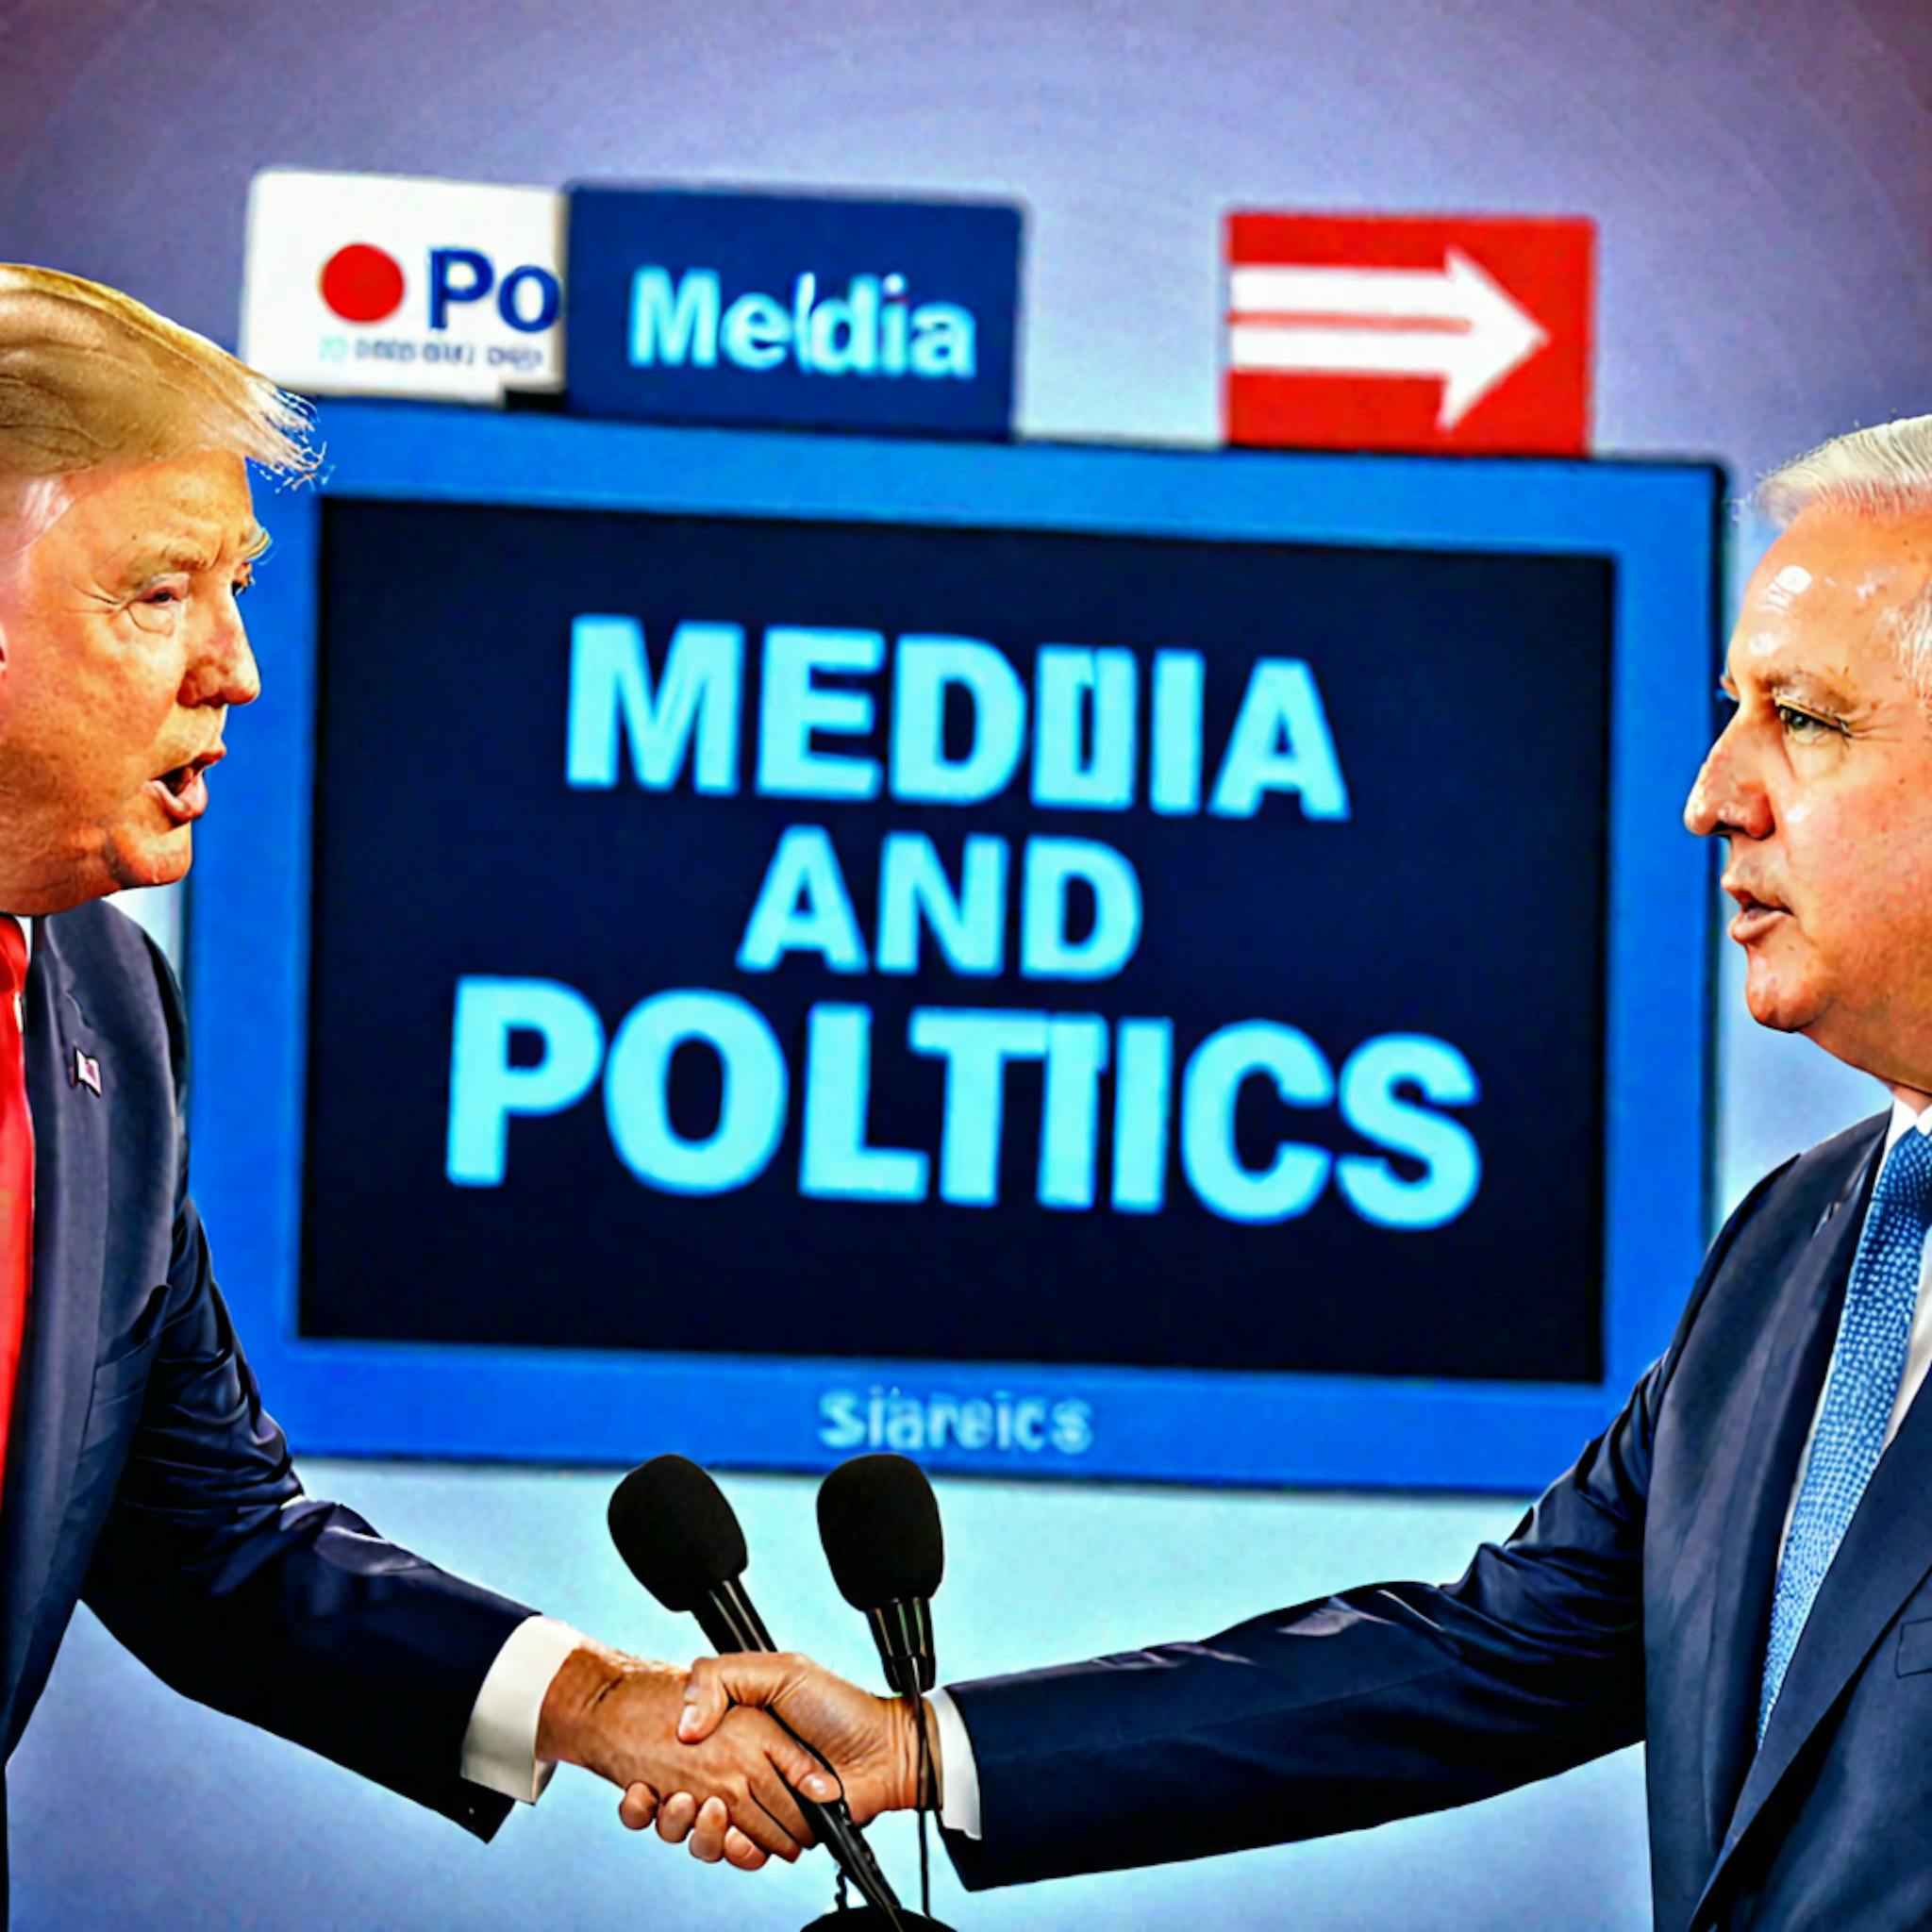 featured image - Postura política burda multilingüe Clasificación de los medios: distribución de temas por periódico